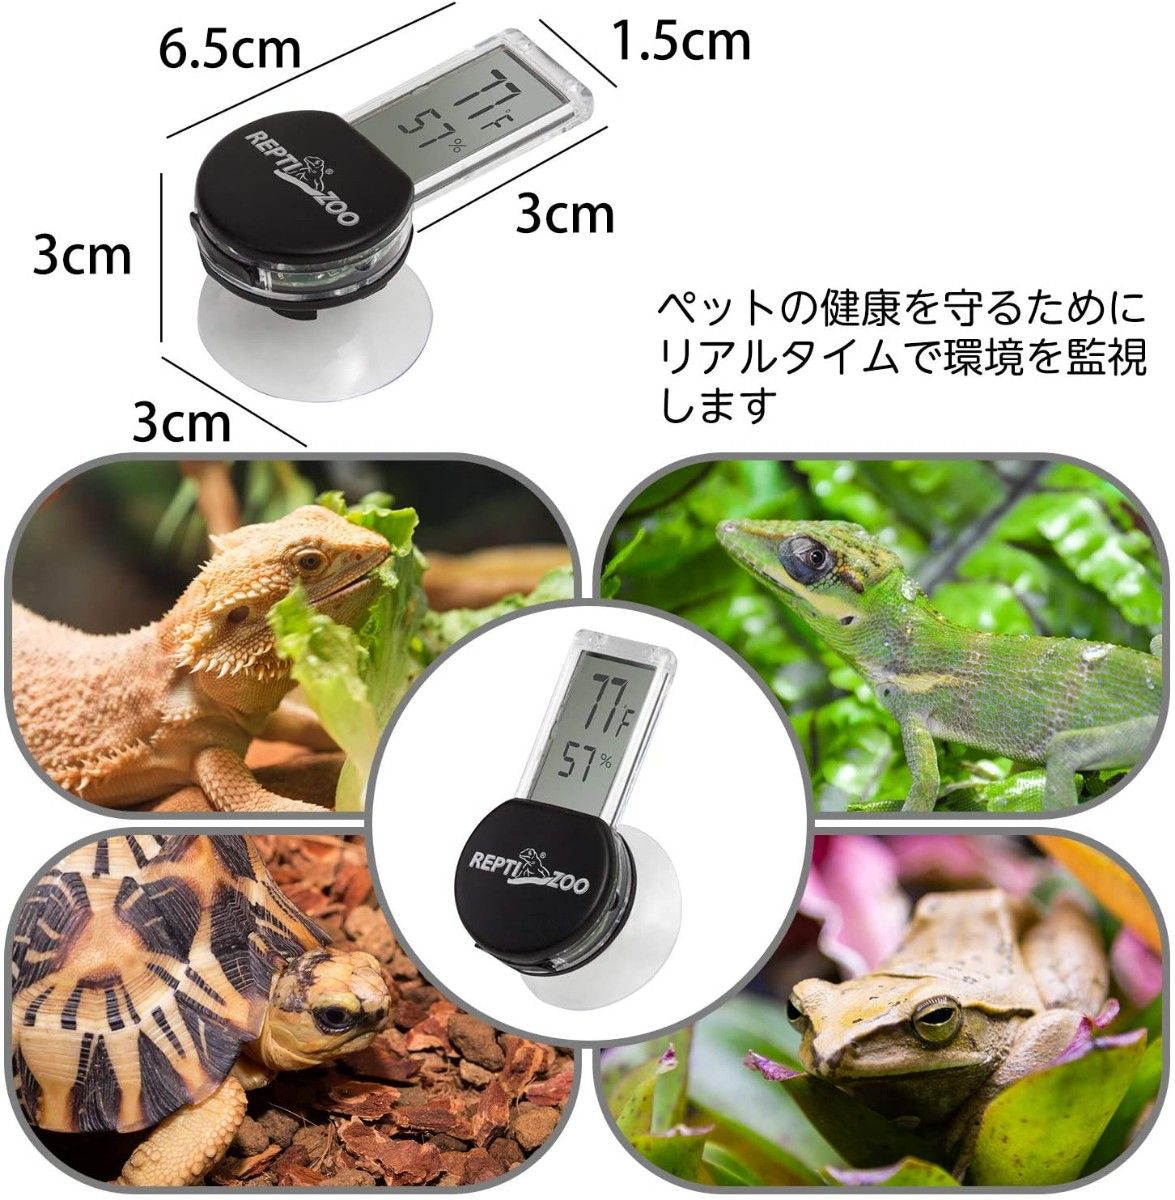 爬虫類温度計 デジタル温度湿度計 爬虫類・両生類用 高精度 半透明 吸盤 (黒)